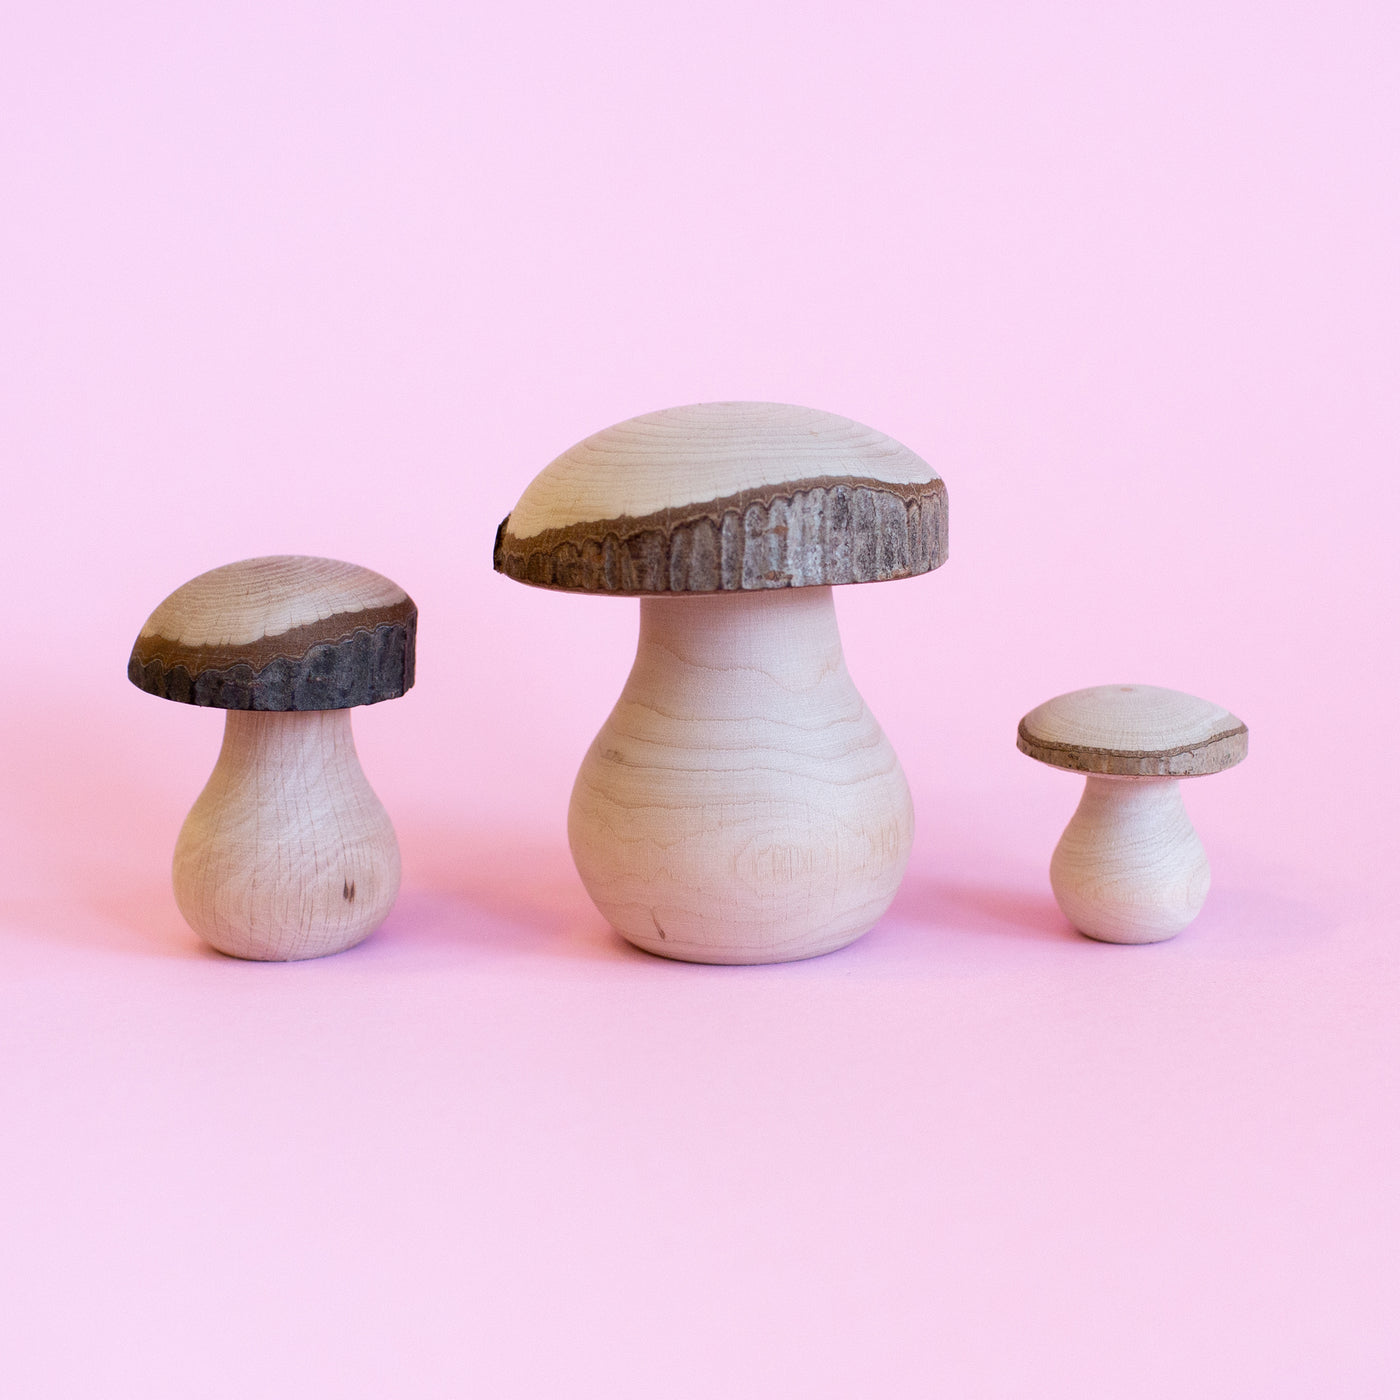 Wooden Handmade Mushrooms